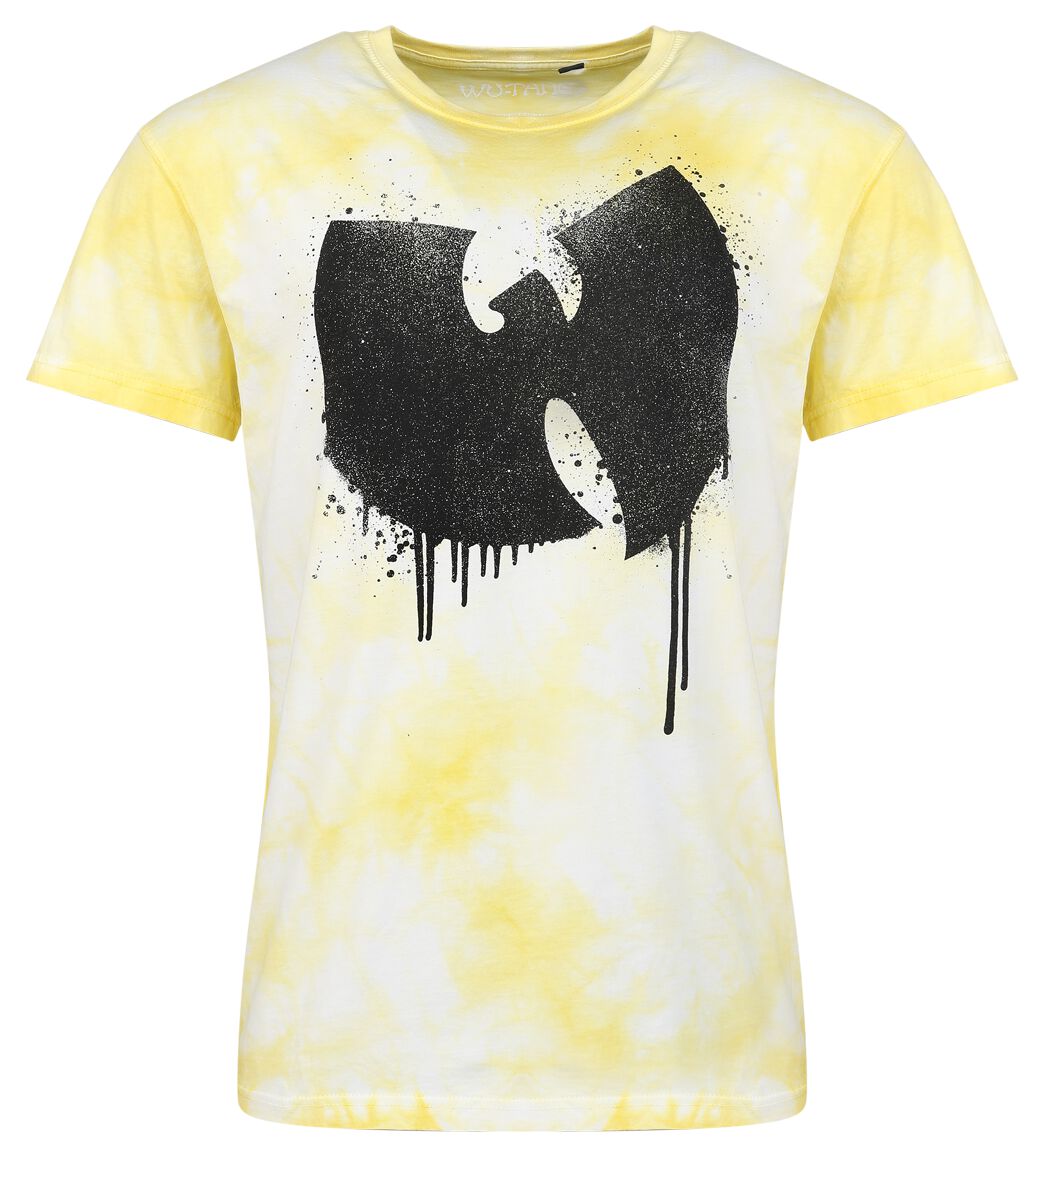 Wu-Tang Clan T-Shirt - ANTFW - S bis 3XL - für Männer - Größe S - gelb  - Lizenziertes Merchandise!